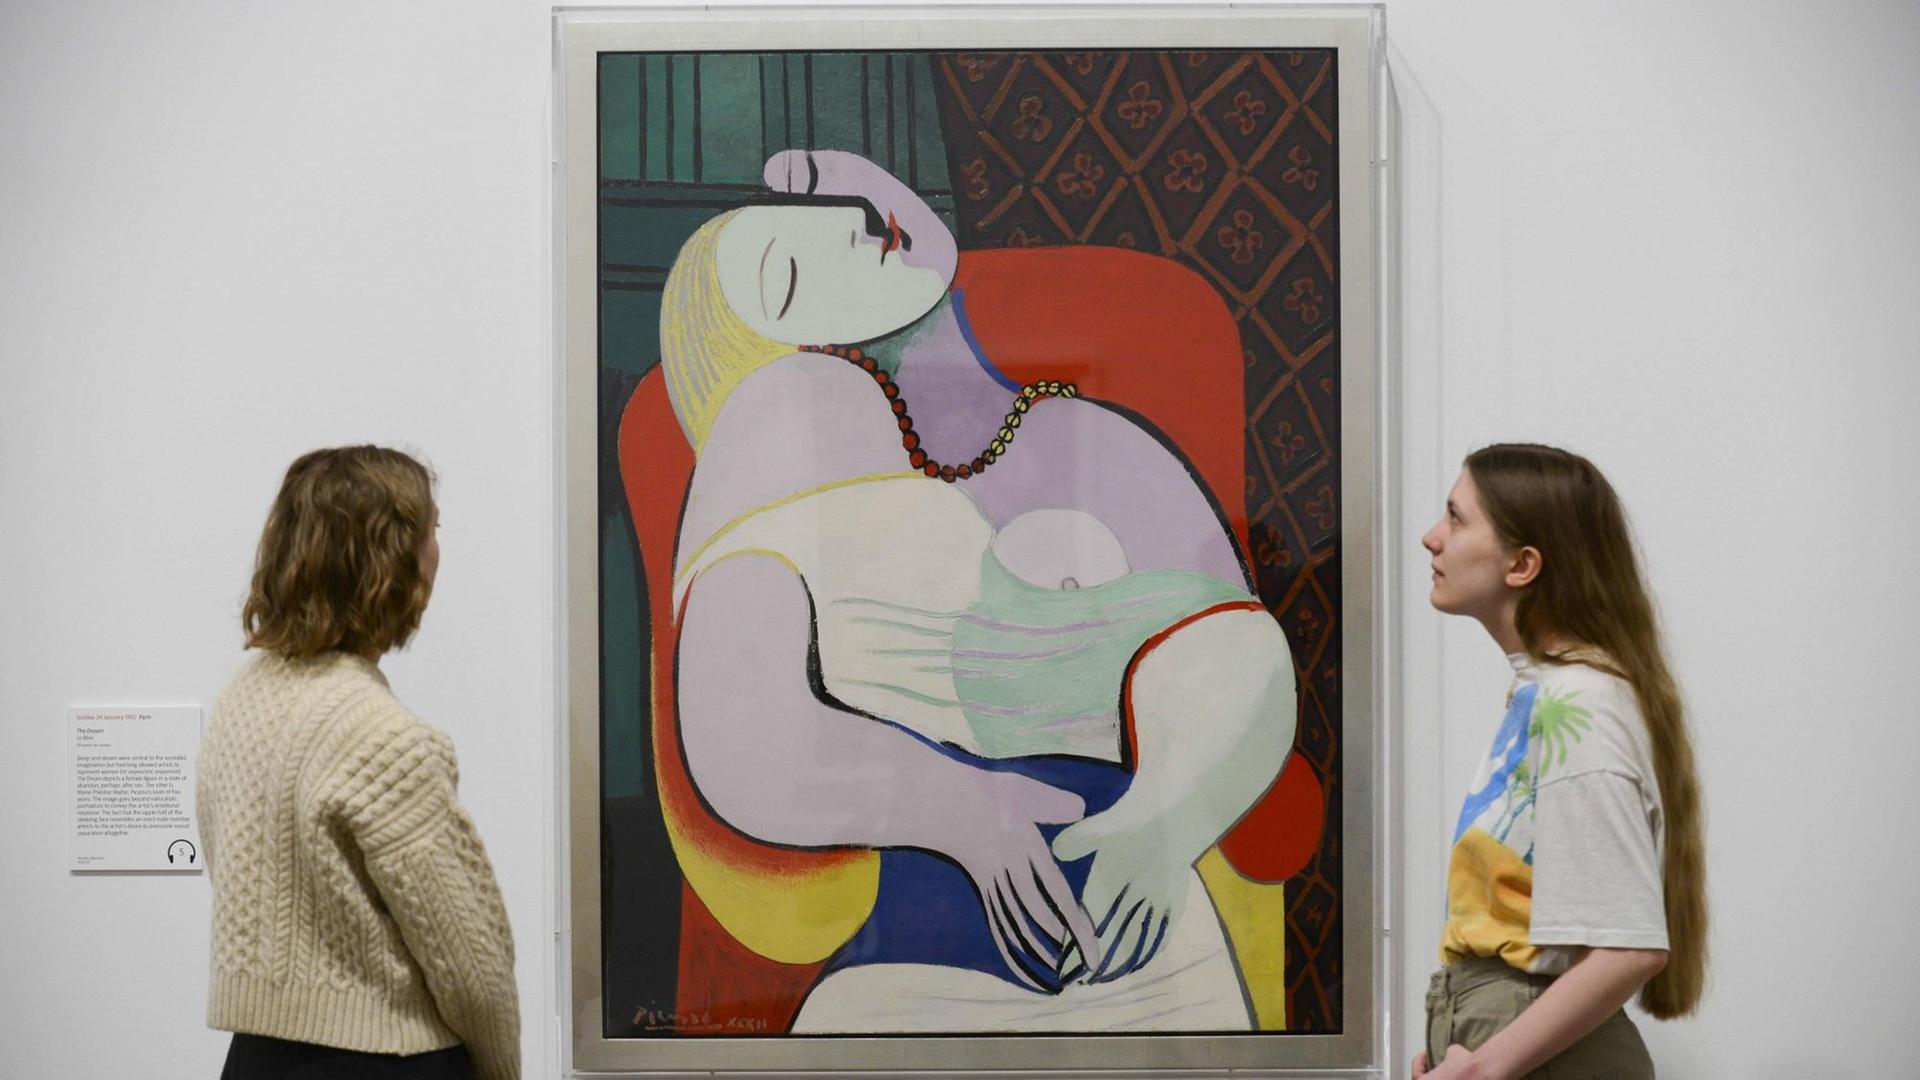 Pablo Picasso: "Le rêve" ("Der Traum") von 1932, ausgestellt in der Londoner Tate Modern. Das Modell ist Marie-Thérèse Walter.